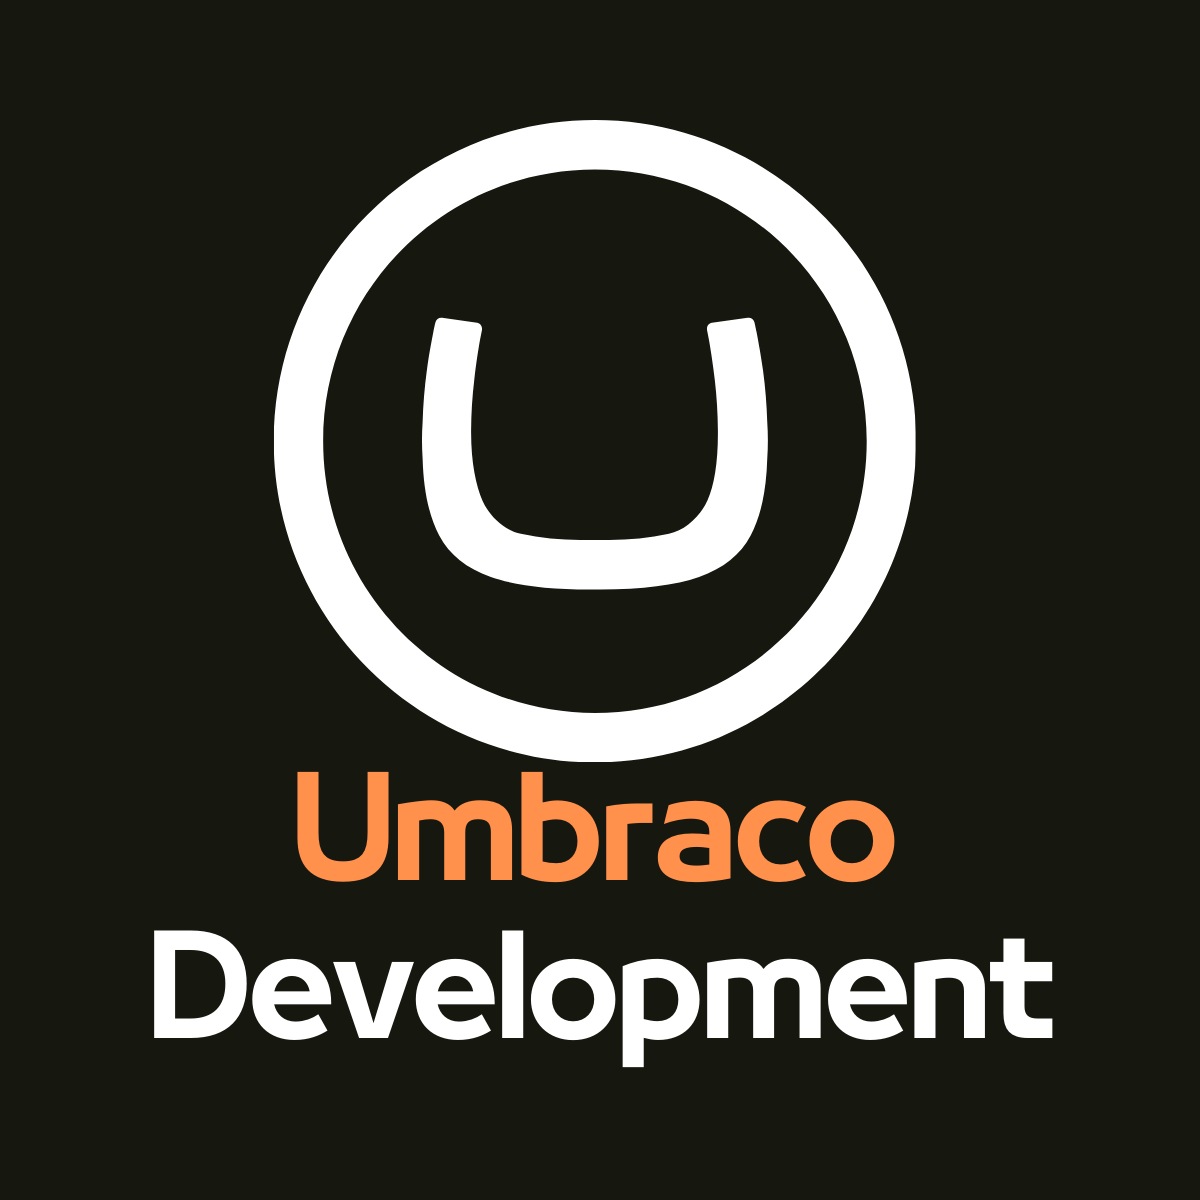 Umbraco Development Company in India